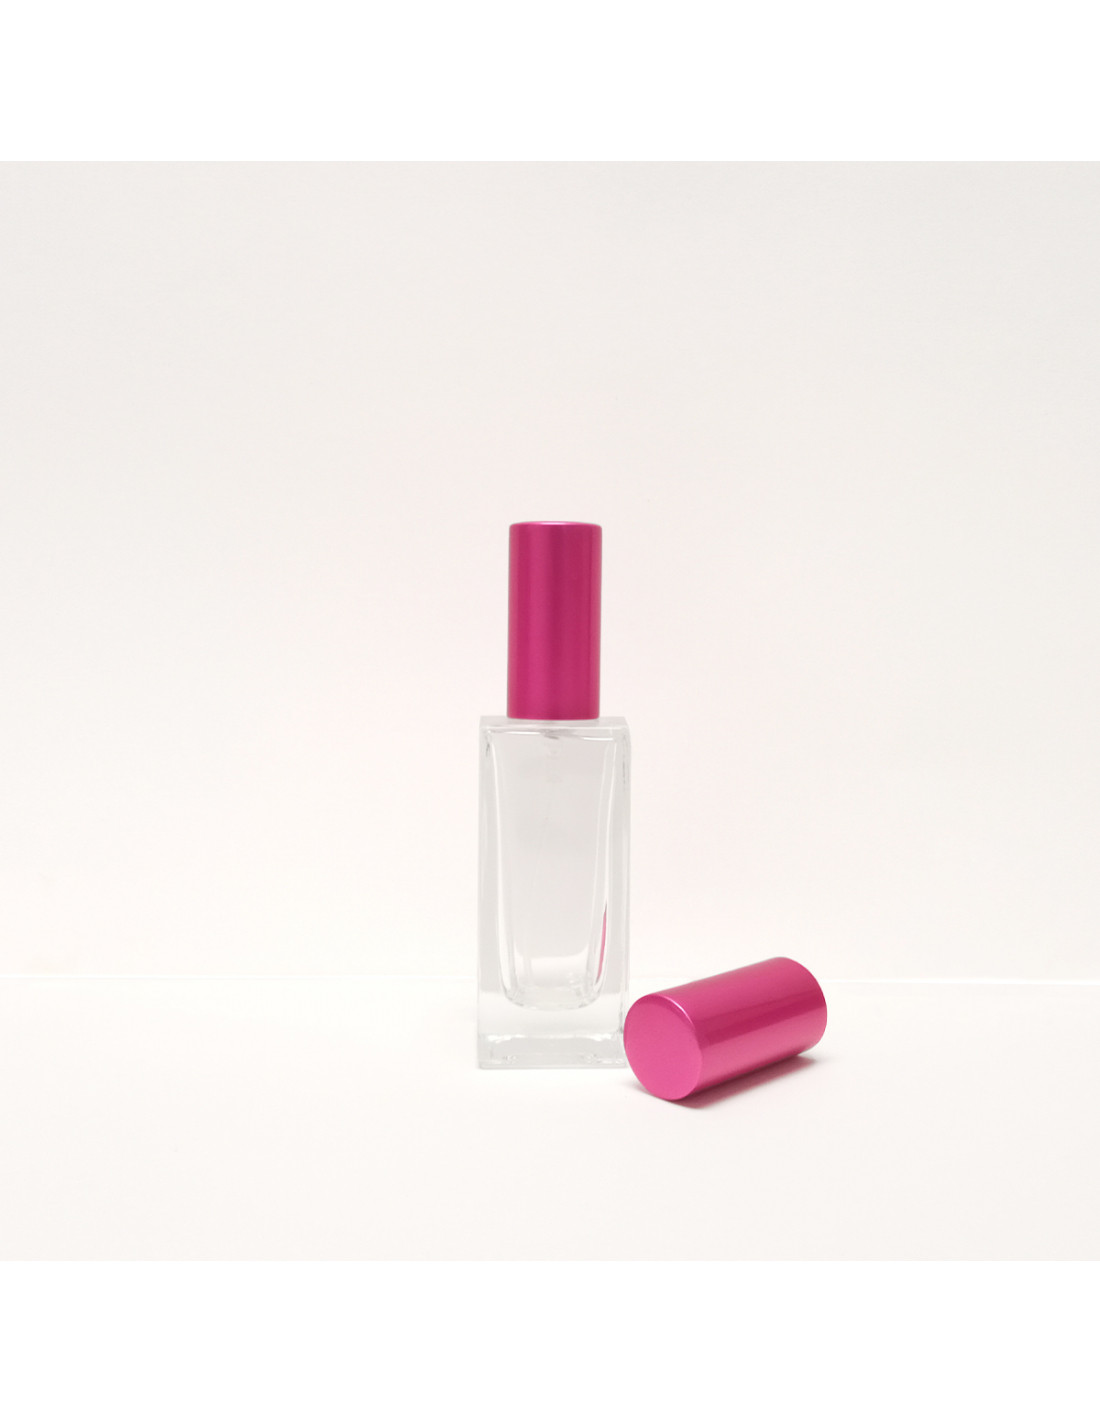 Nachfüllbar Parfum Flakon Klee 50ml - Vismaressence - Parfümhersteller